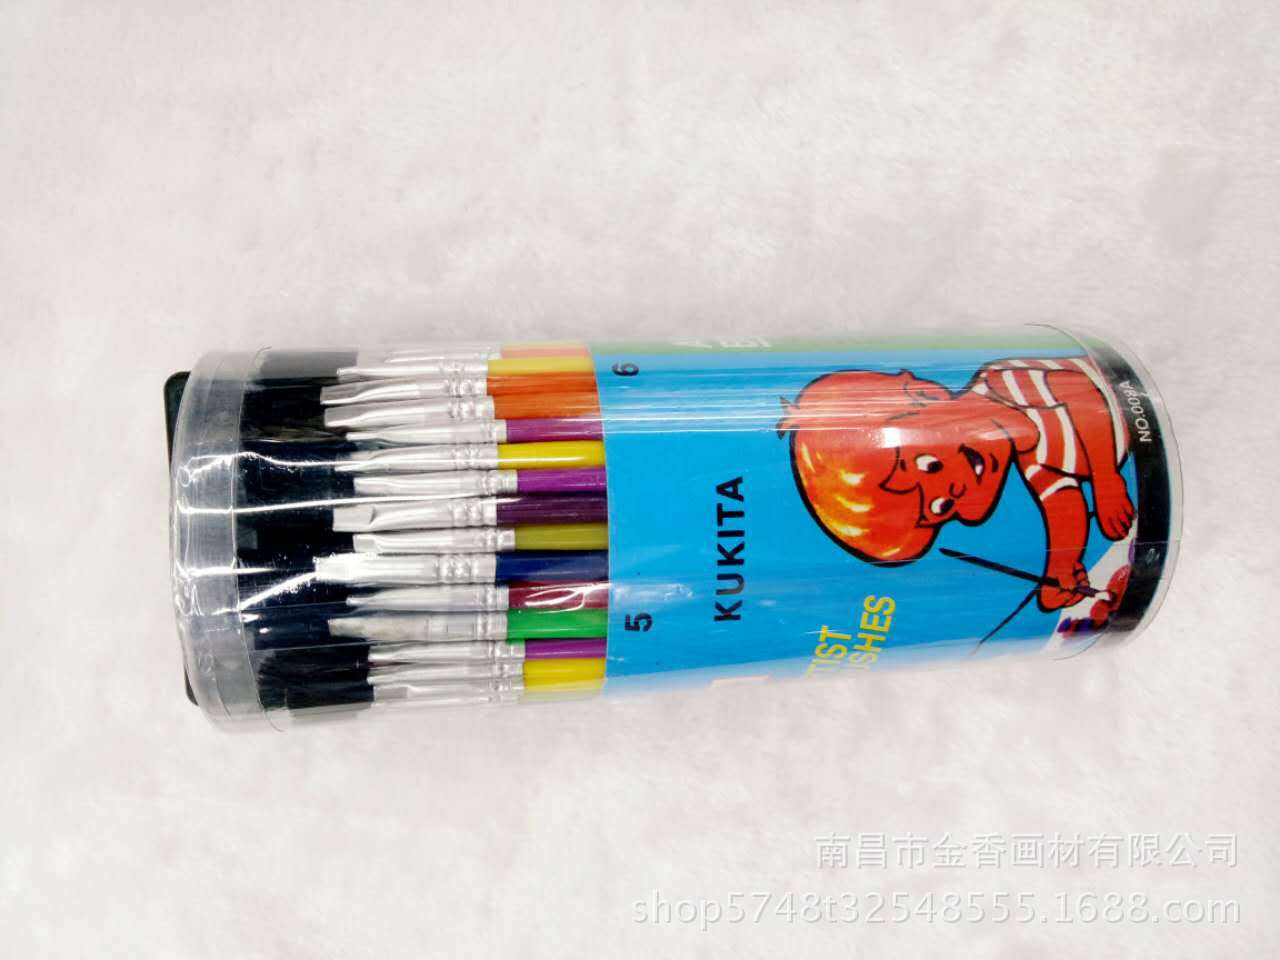 厂家供应 桶装彩杆笔刷学生绘画水粉水彩油画笔套装 美术耗材